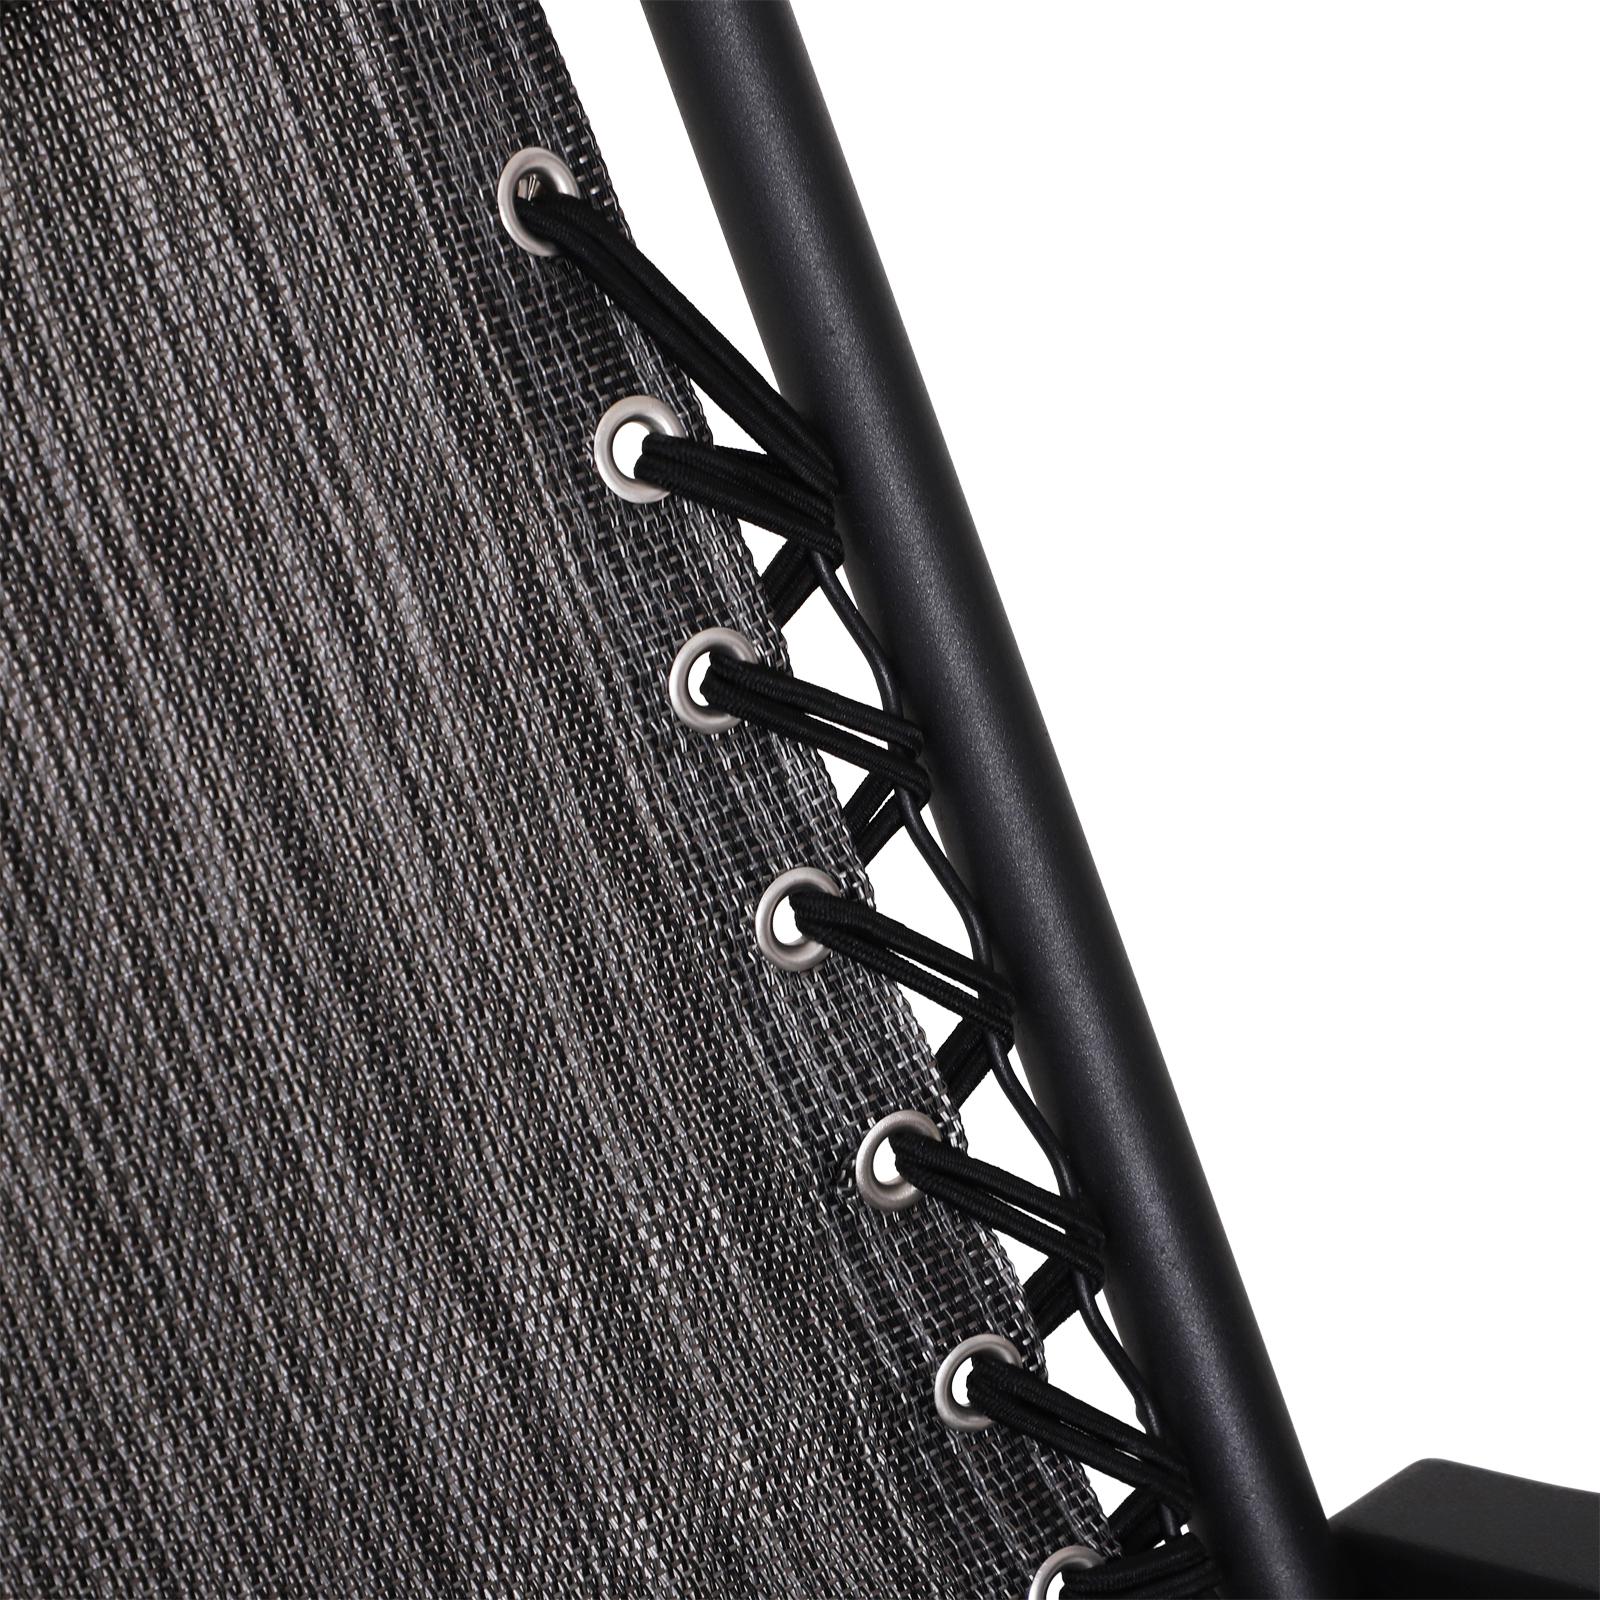 Fauteuil à bascule rocking chair pliable de jardin dim. 94L x 64l x 110H cm acier époxy textilène gris chiné